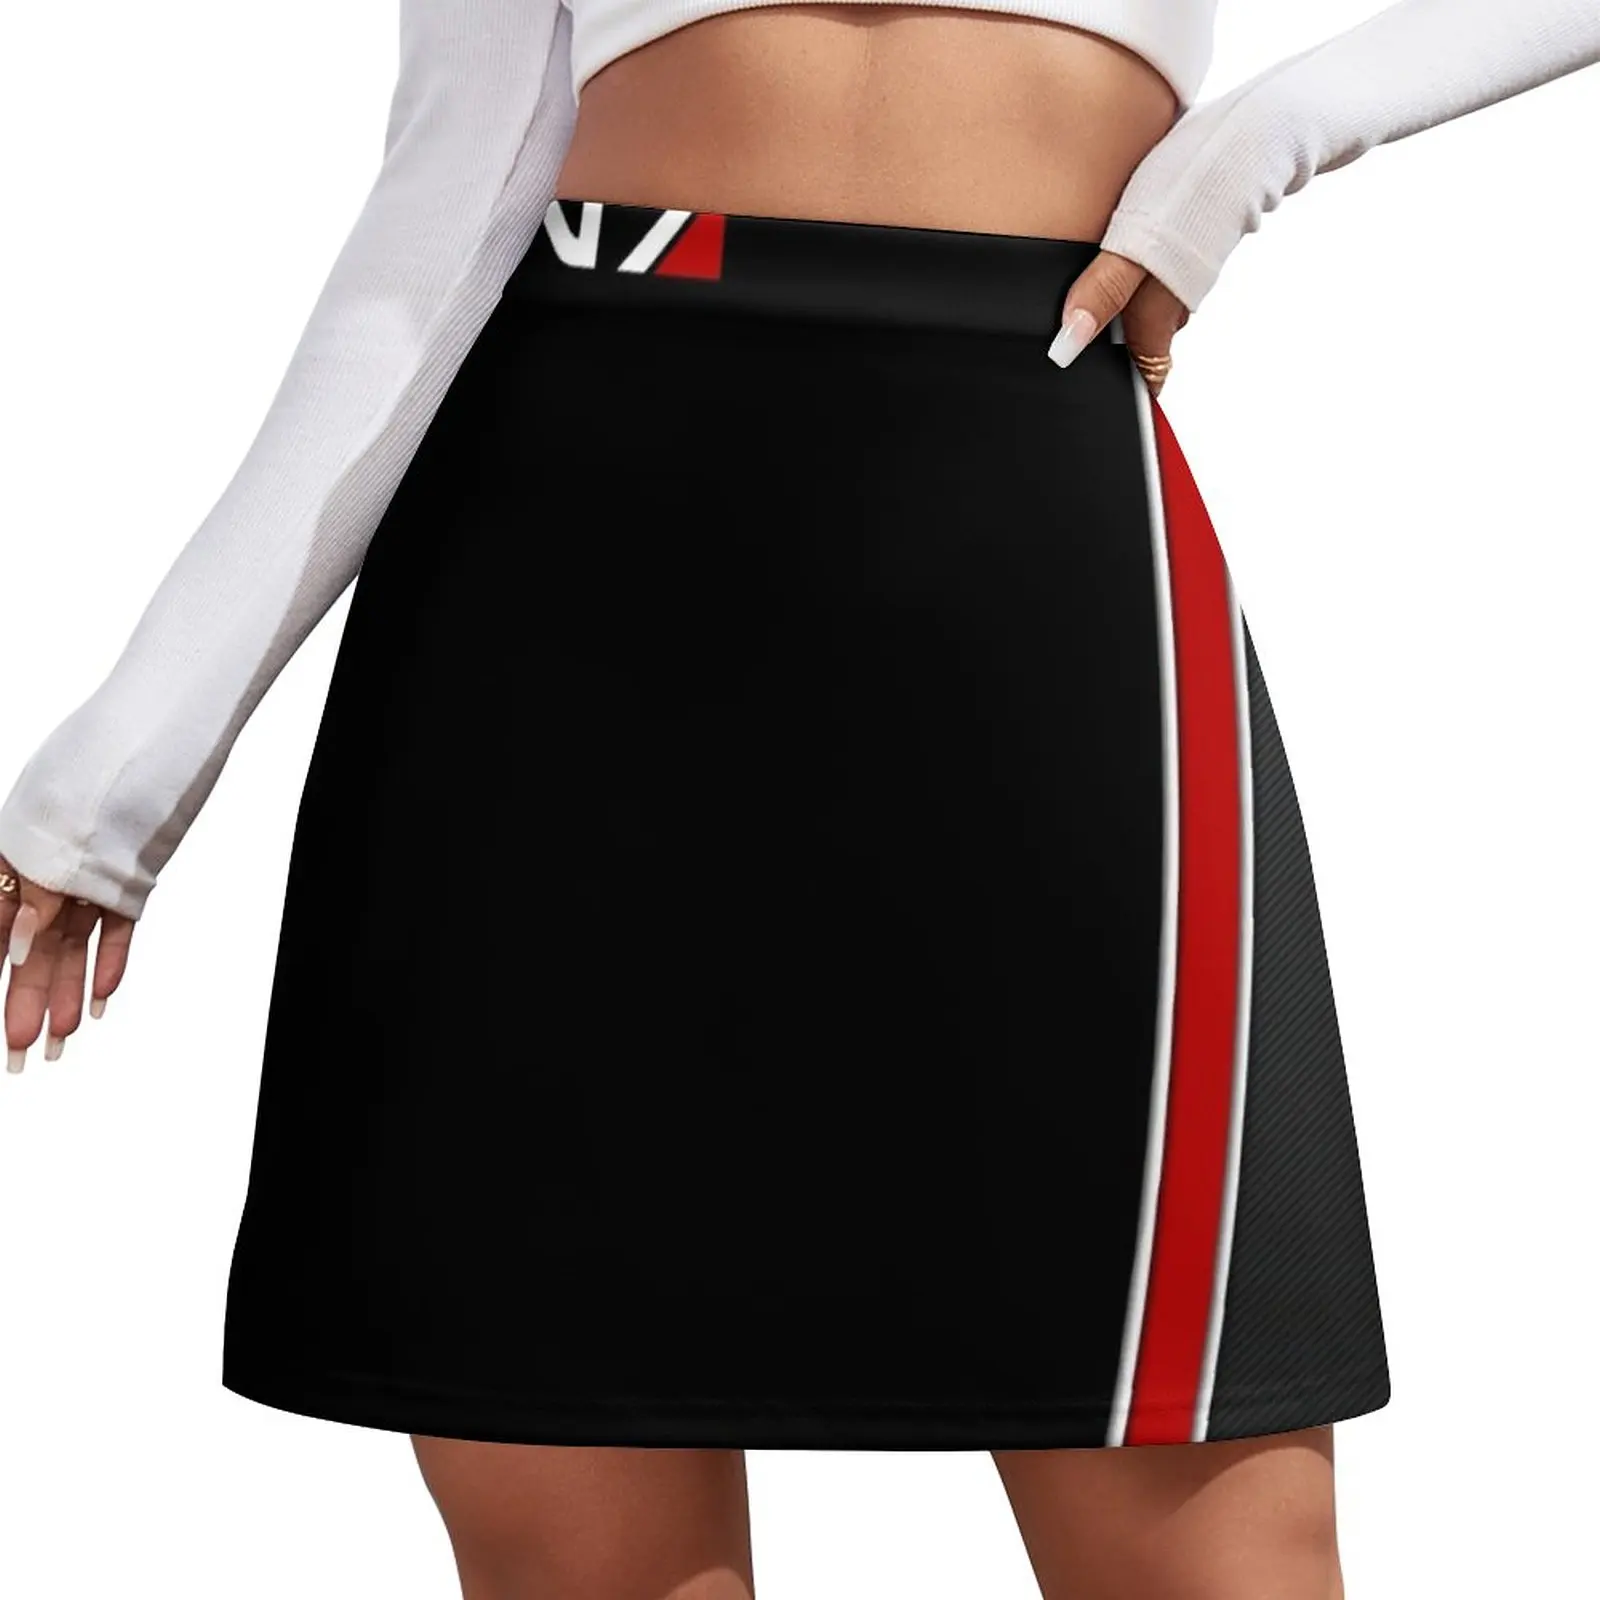 N7 Mass effect emblem! Mini Skirt Womens dresses summer clothes Skirt shorts